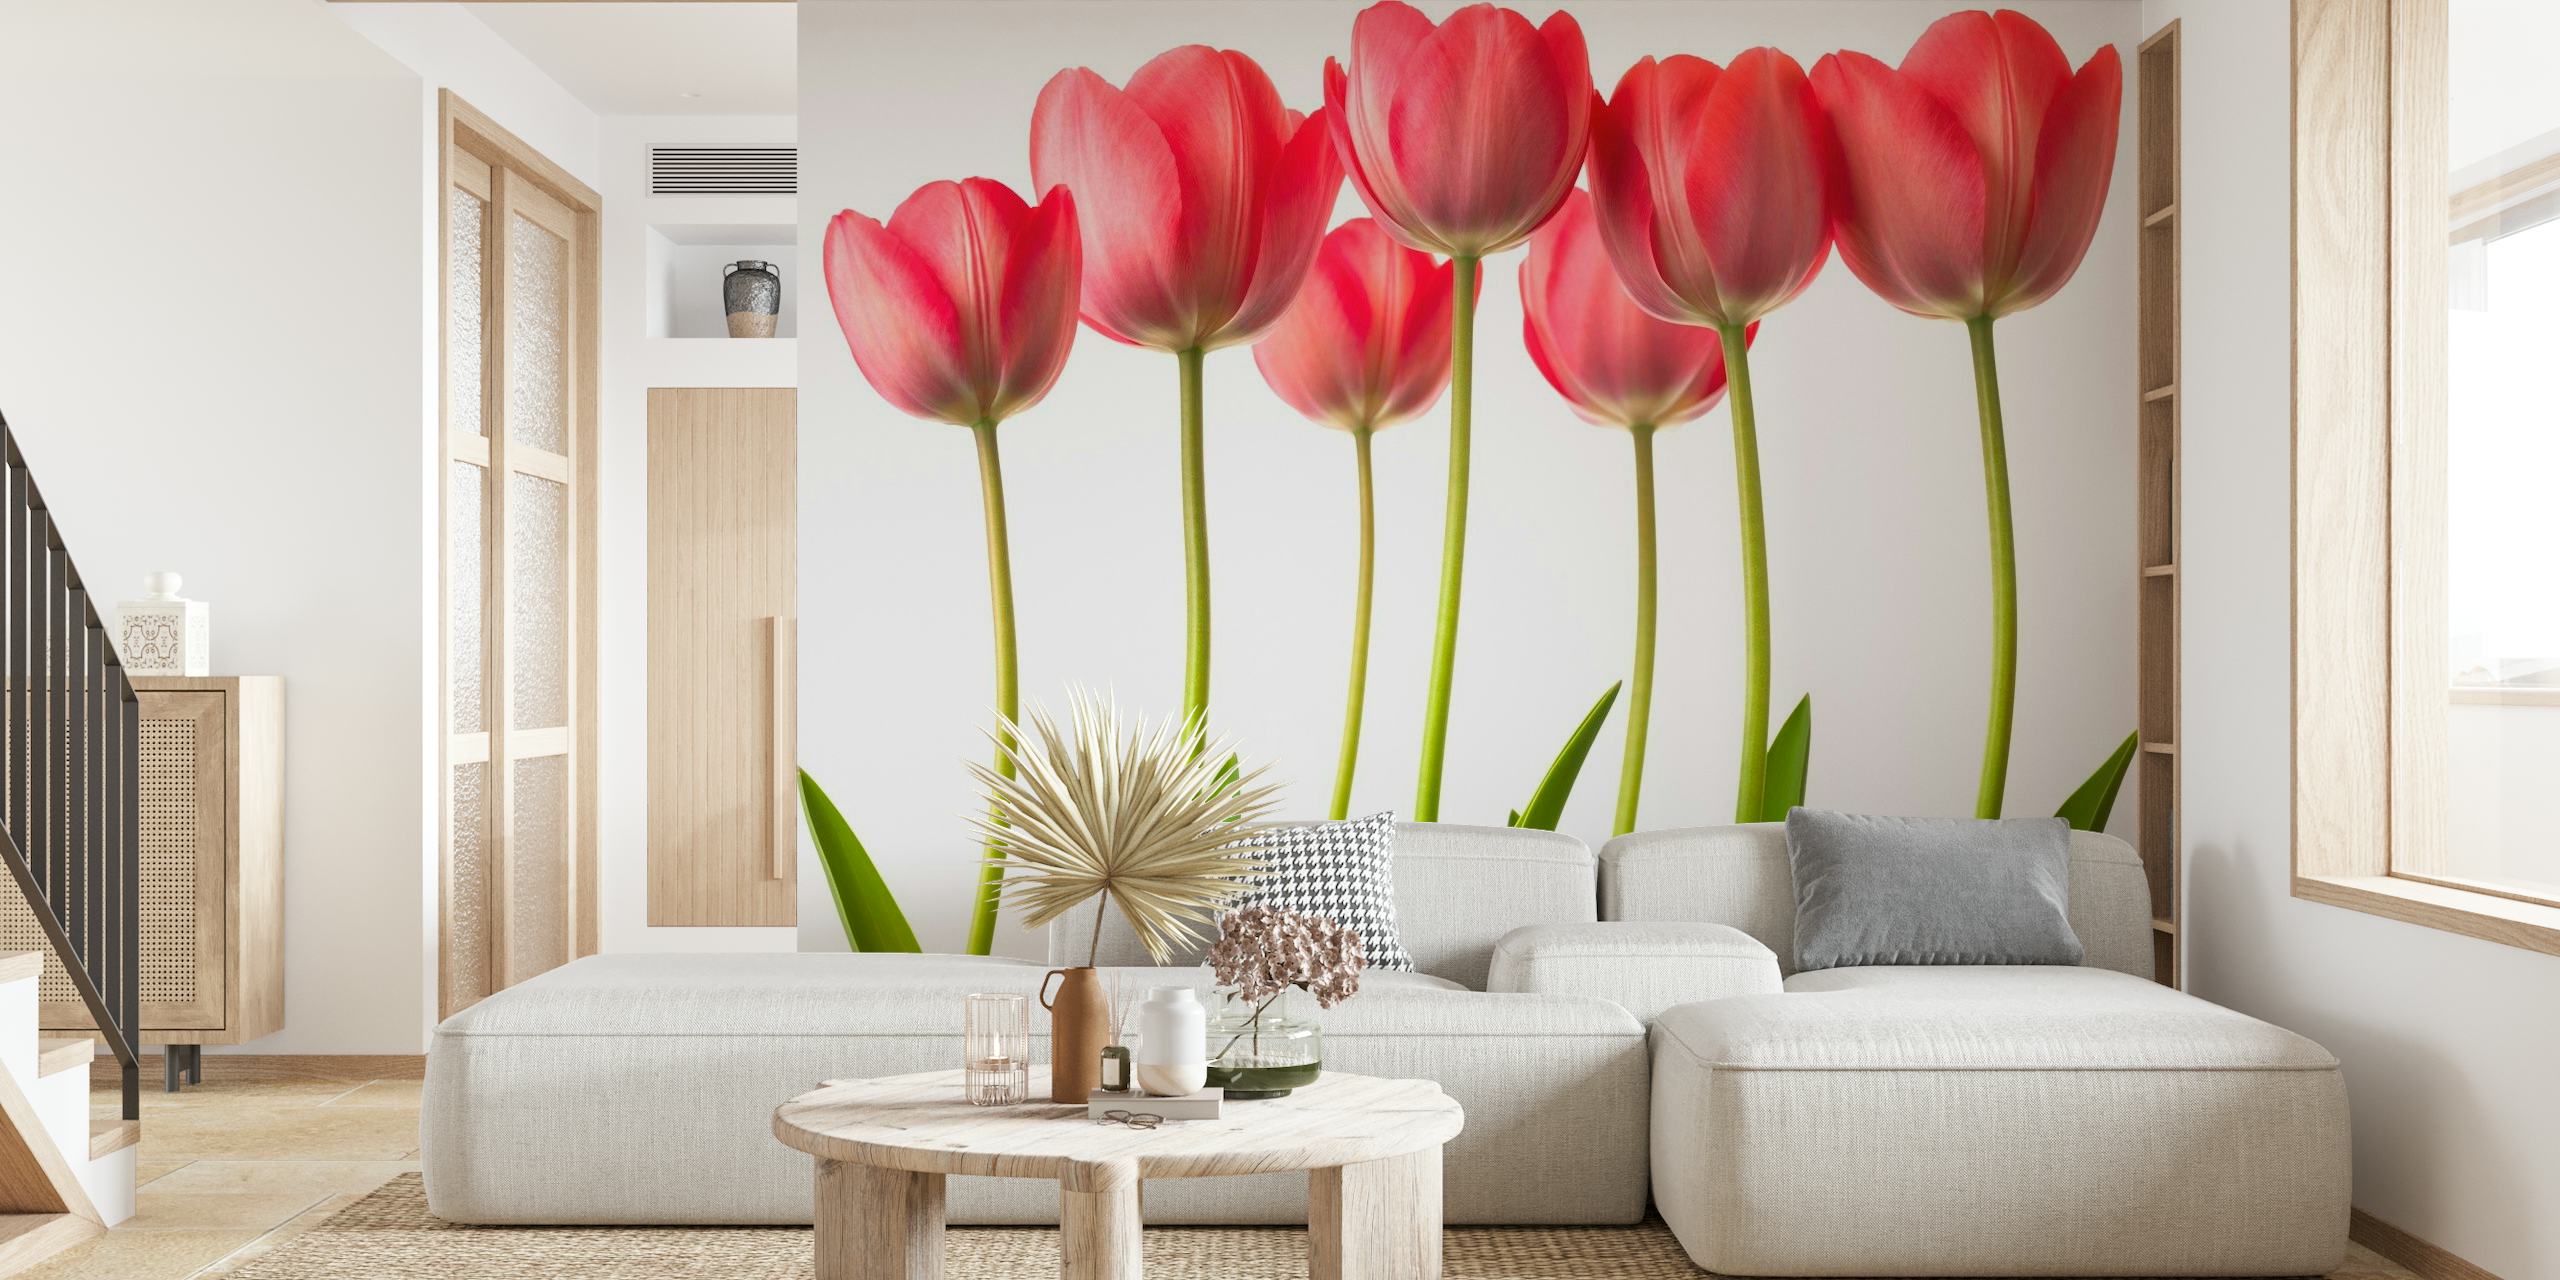 Growing Tulips behang